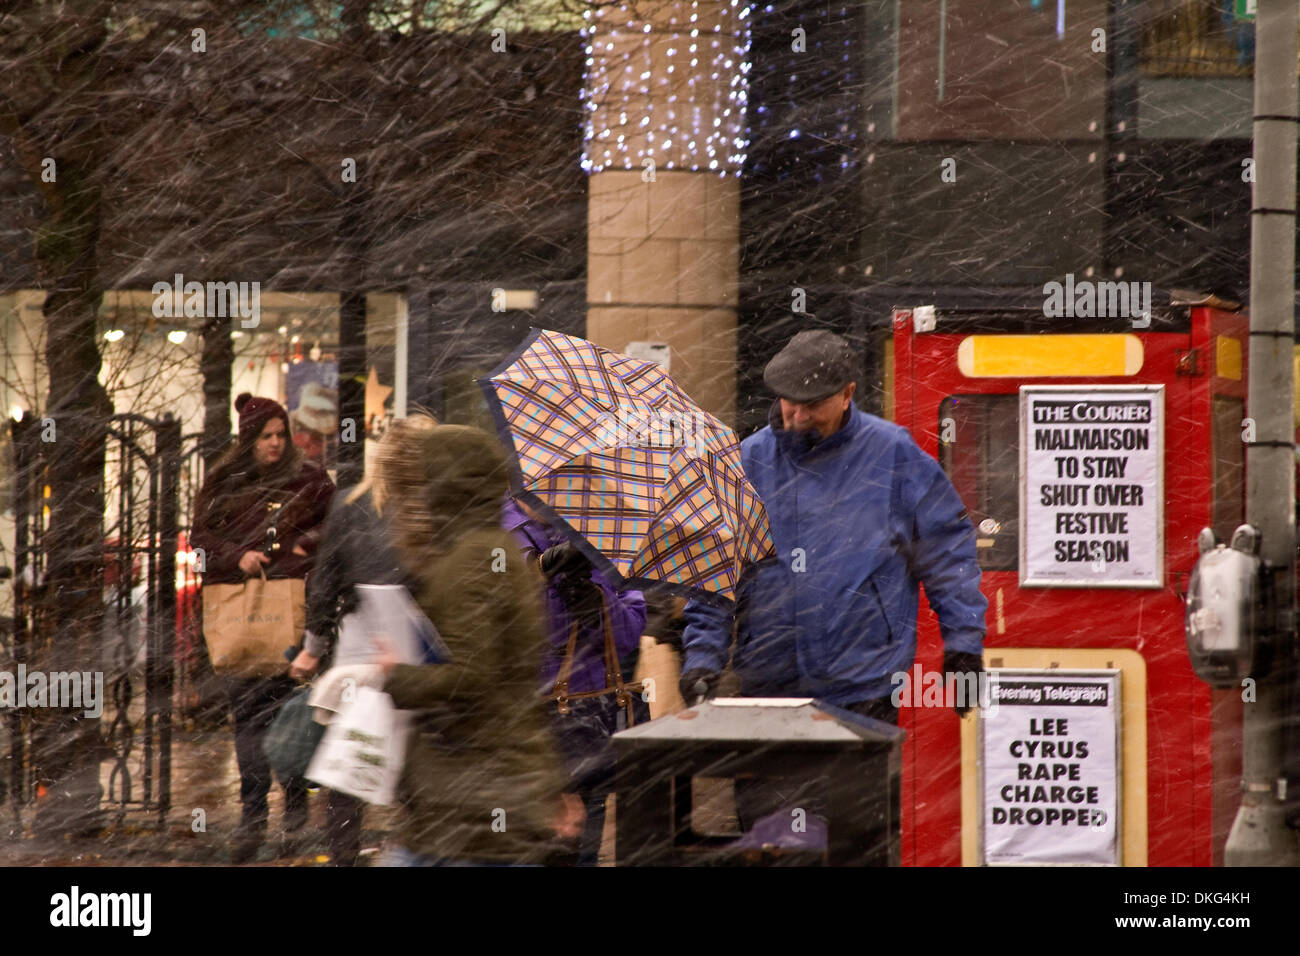 Dundee, Écosse, Royaume-Uni. 5 Décembre, 2013.Le met office a émis une alerte jaune de forts vents et tempêtes de neige pour le 5 décembre, 02:00 - 16:00 avec des rafales de 60 km/h généralisé atteignant 80km/h dans certaines zones. Clients dans la ville bravant les rigueurs de l'hiver aujourd'hui Crédit : Dundee Photographics / Alamy Live News Banque D'Images